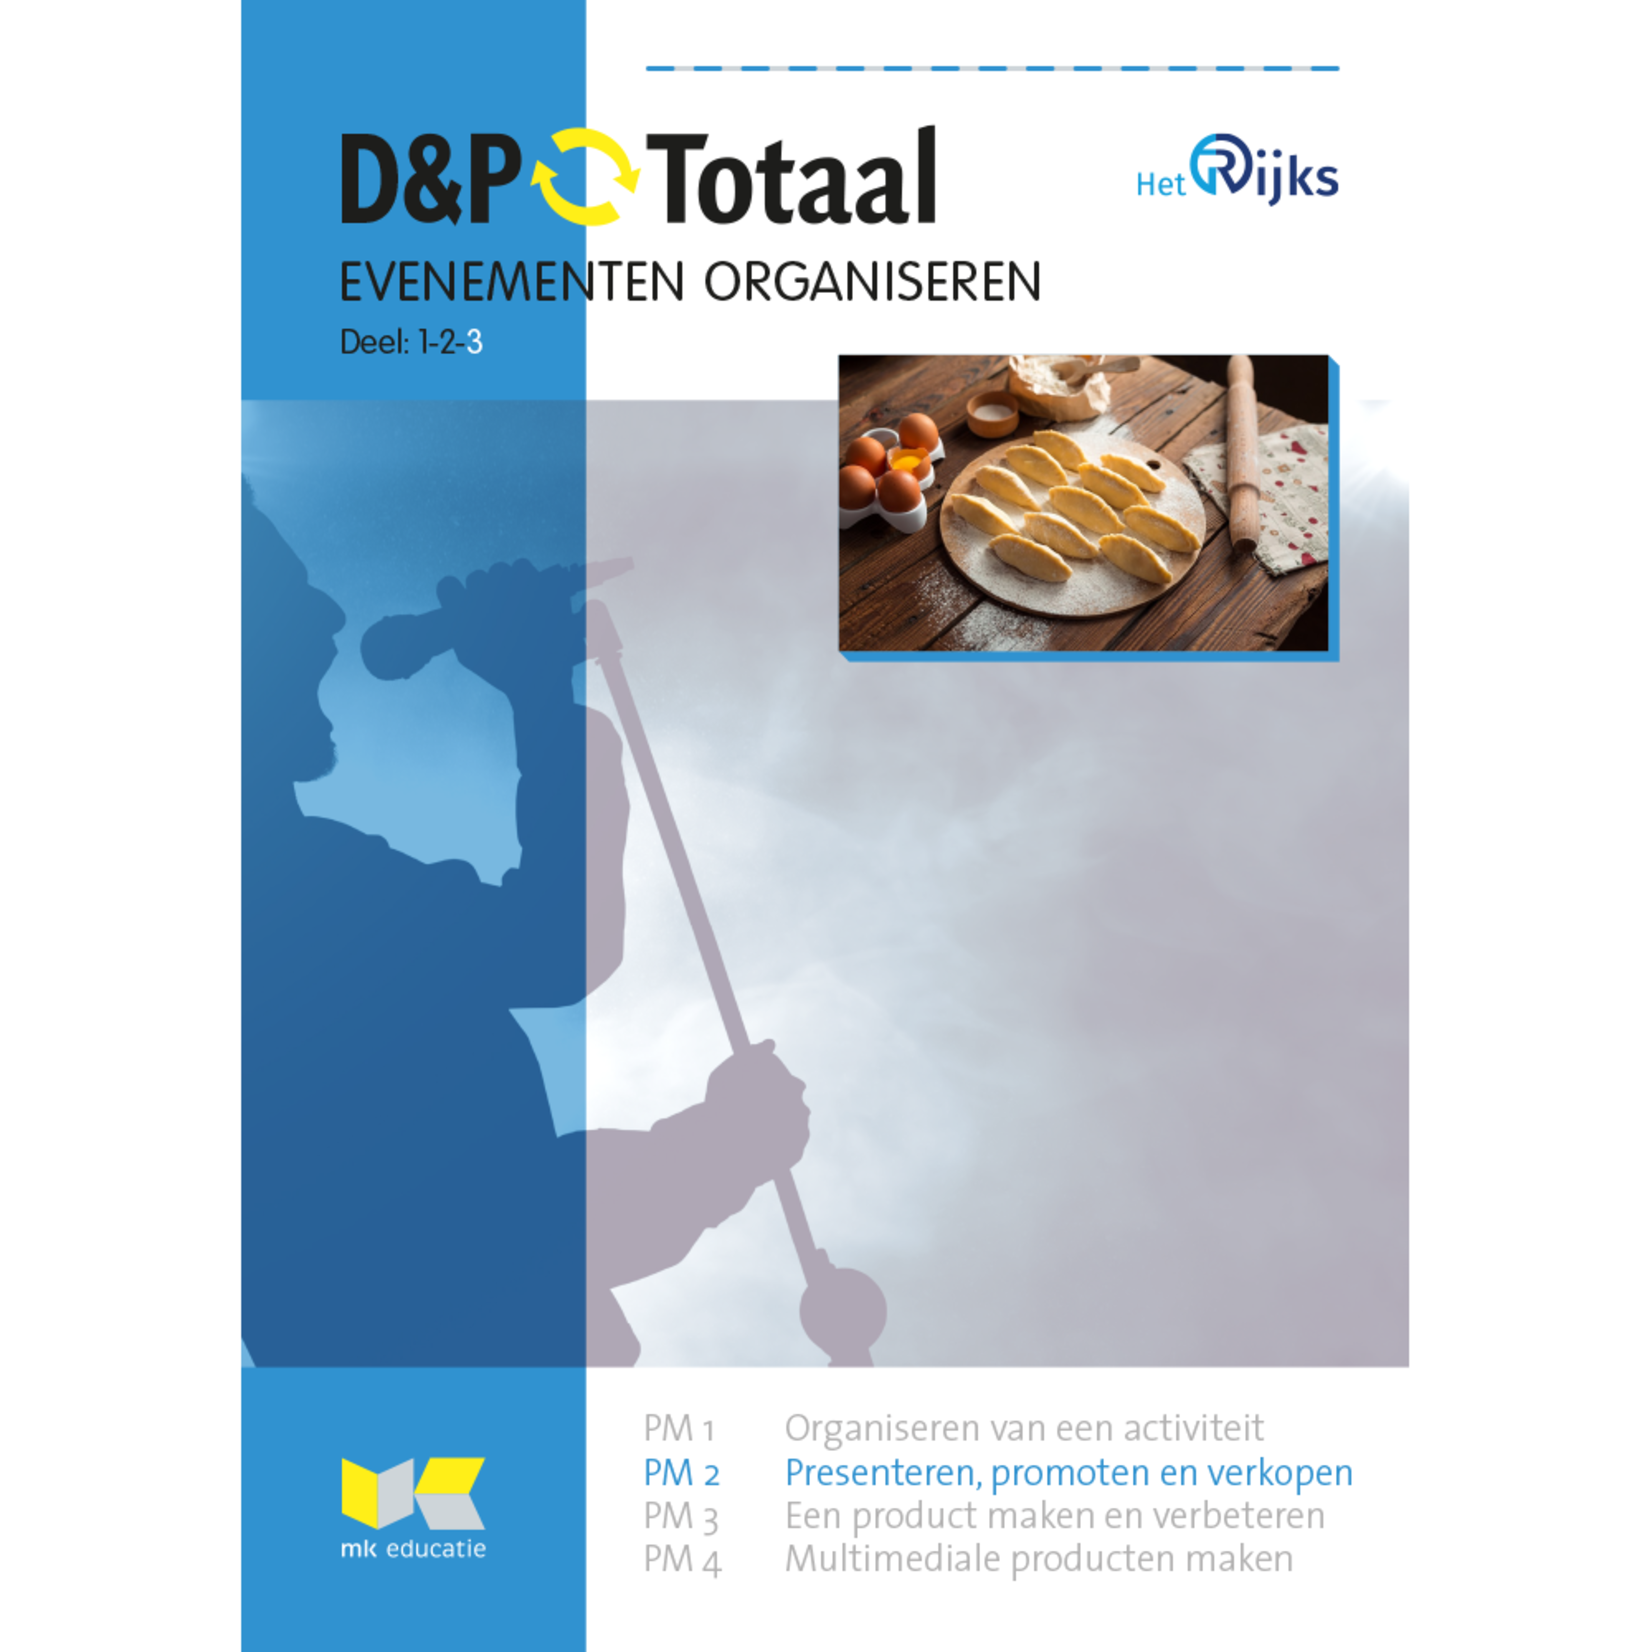 D&P-Totaal - HBR Evenementen organiseren (PM2/1820)